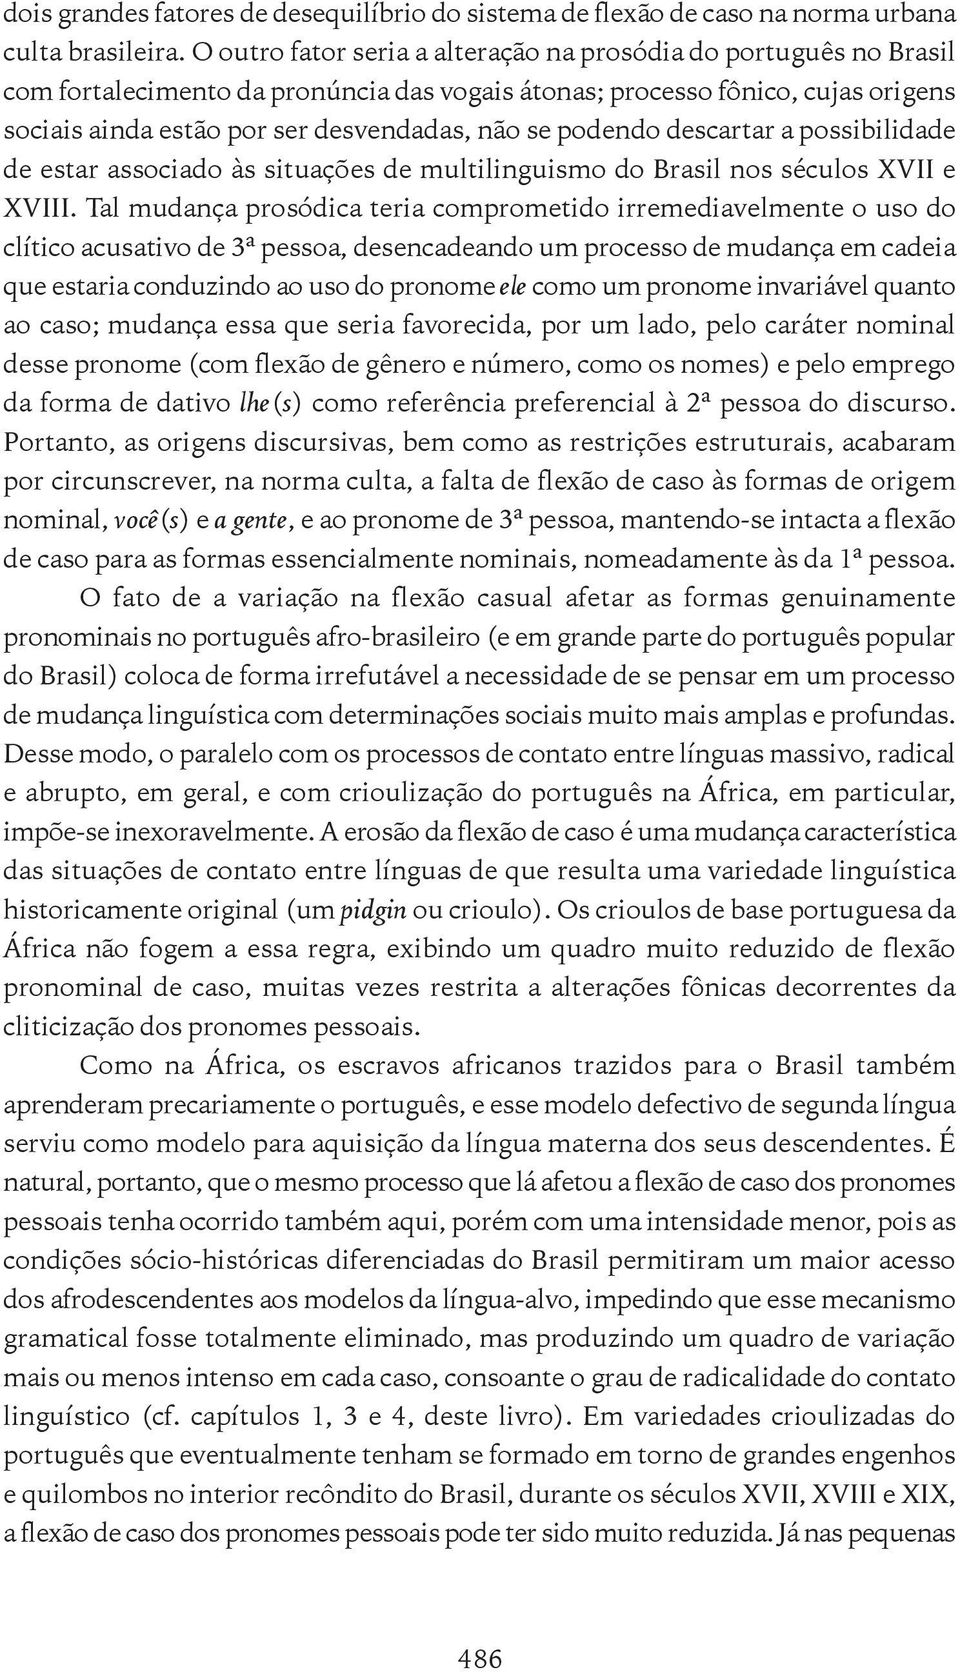 podendo descartar a possibilidade de estar associado às situações de multilinguismo do Brasil nos séculos XVII e XVIII.